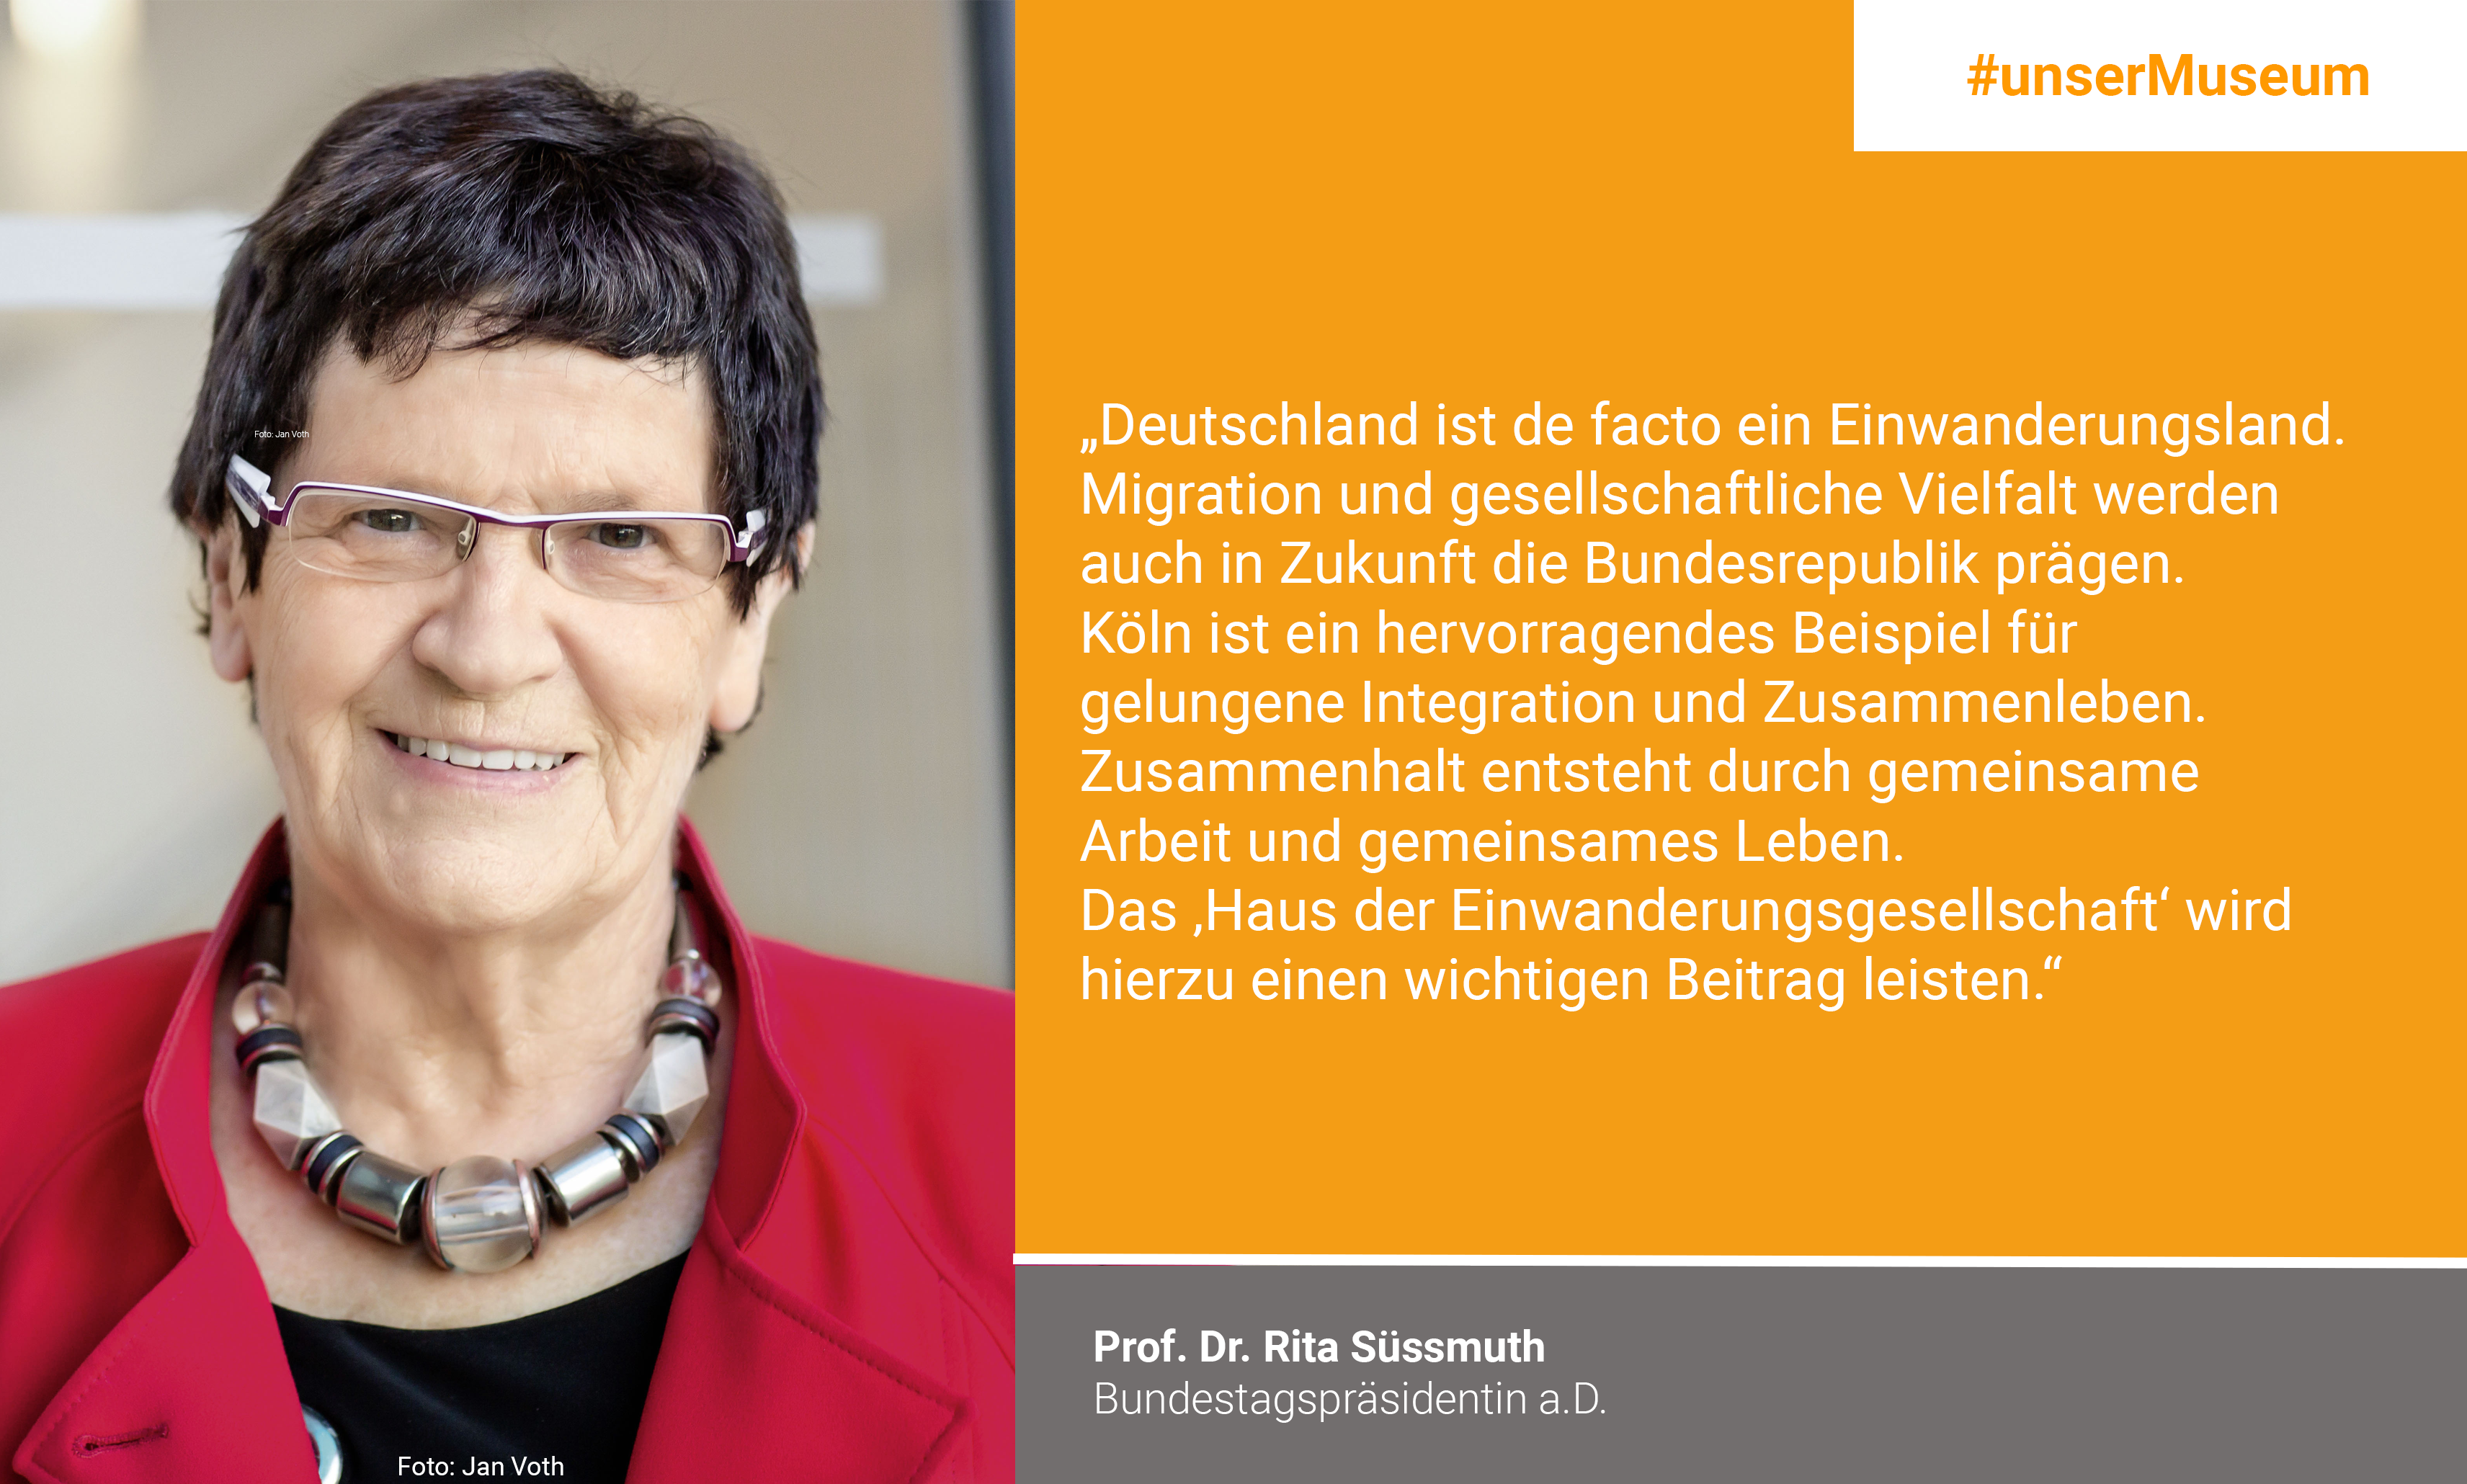 Prof. Dr. Rita Süßmuth, Bundestagspräsidentin a.D. / Schirmherrin "Haus der Einwanderungsgesellschaft": "Deutschland ist de facto ein Einwanderungsland. Migration und gesellschaftliche Vielfalt werden auch in Zukunft die Bundesrepublik prägen. Dass wir in großer Zahl Geflüchtete aufnehmen, ist nicht in allen Teilen der Bevölkerung konsensfähig verankert. Die Ereignisse im Jahr 2015 haben auch Verunsicherung und Ängste bei Vielen ausgelöst. Köln ist ein hervorragendes Beispiel für gelungene Integration und Zusammenleben. Zusammenhalt entsteht durch gemeinsame Arbeit und gemeinsames Leben. Das „Haus der Einwanderungsgesellschaft“ wird hierzu einen wichtigen Beitrag leisten."